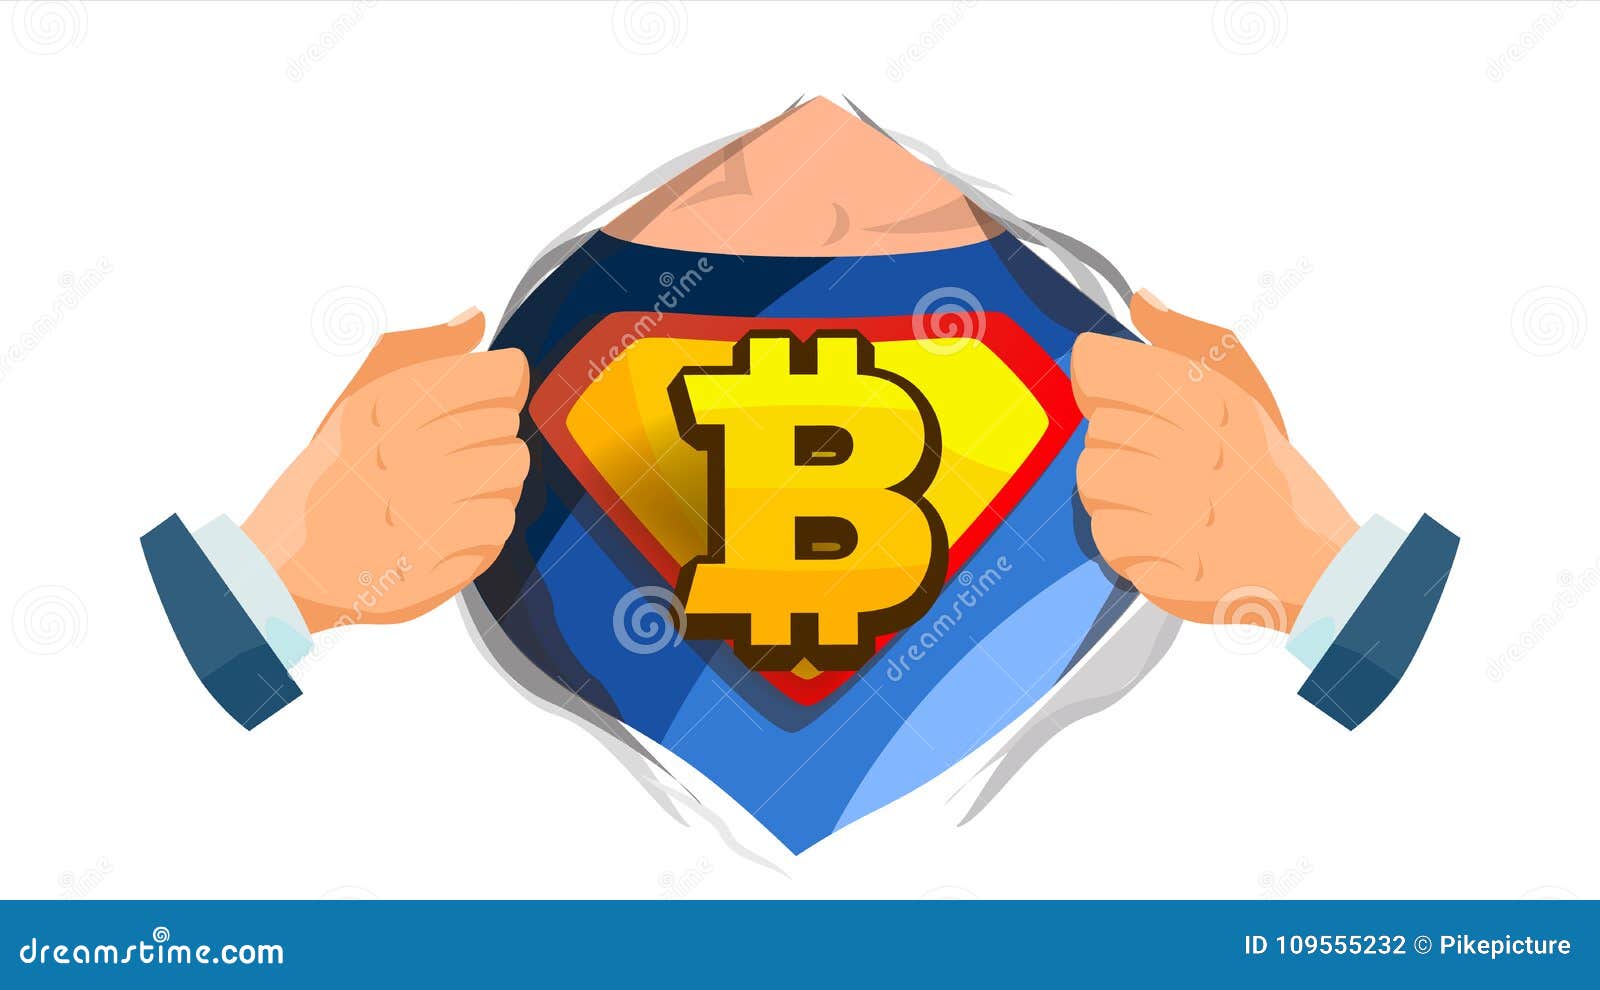 how to buy bitcoin gold crypto superhero